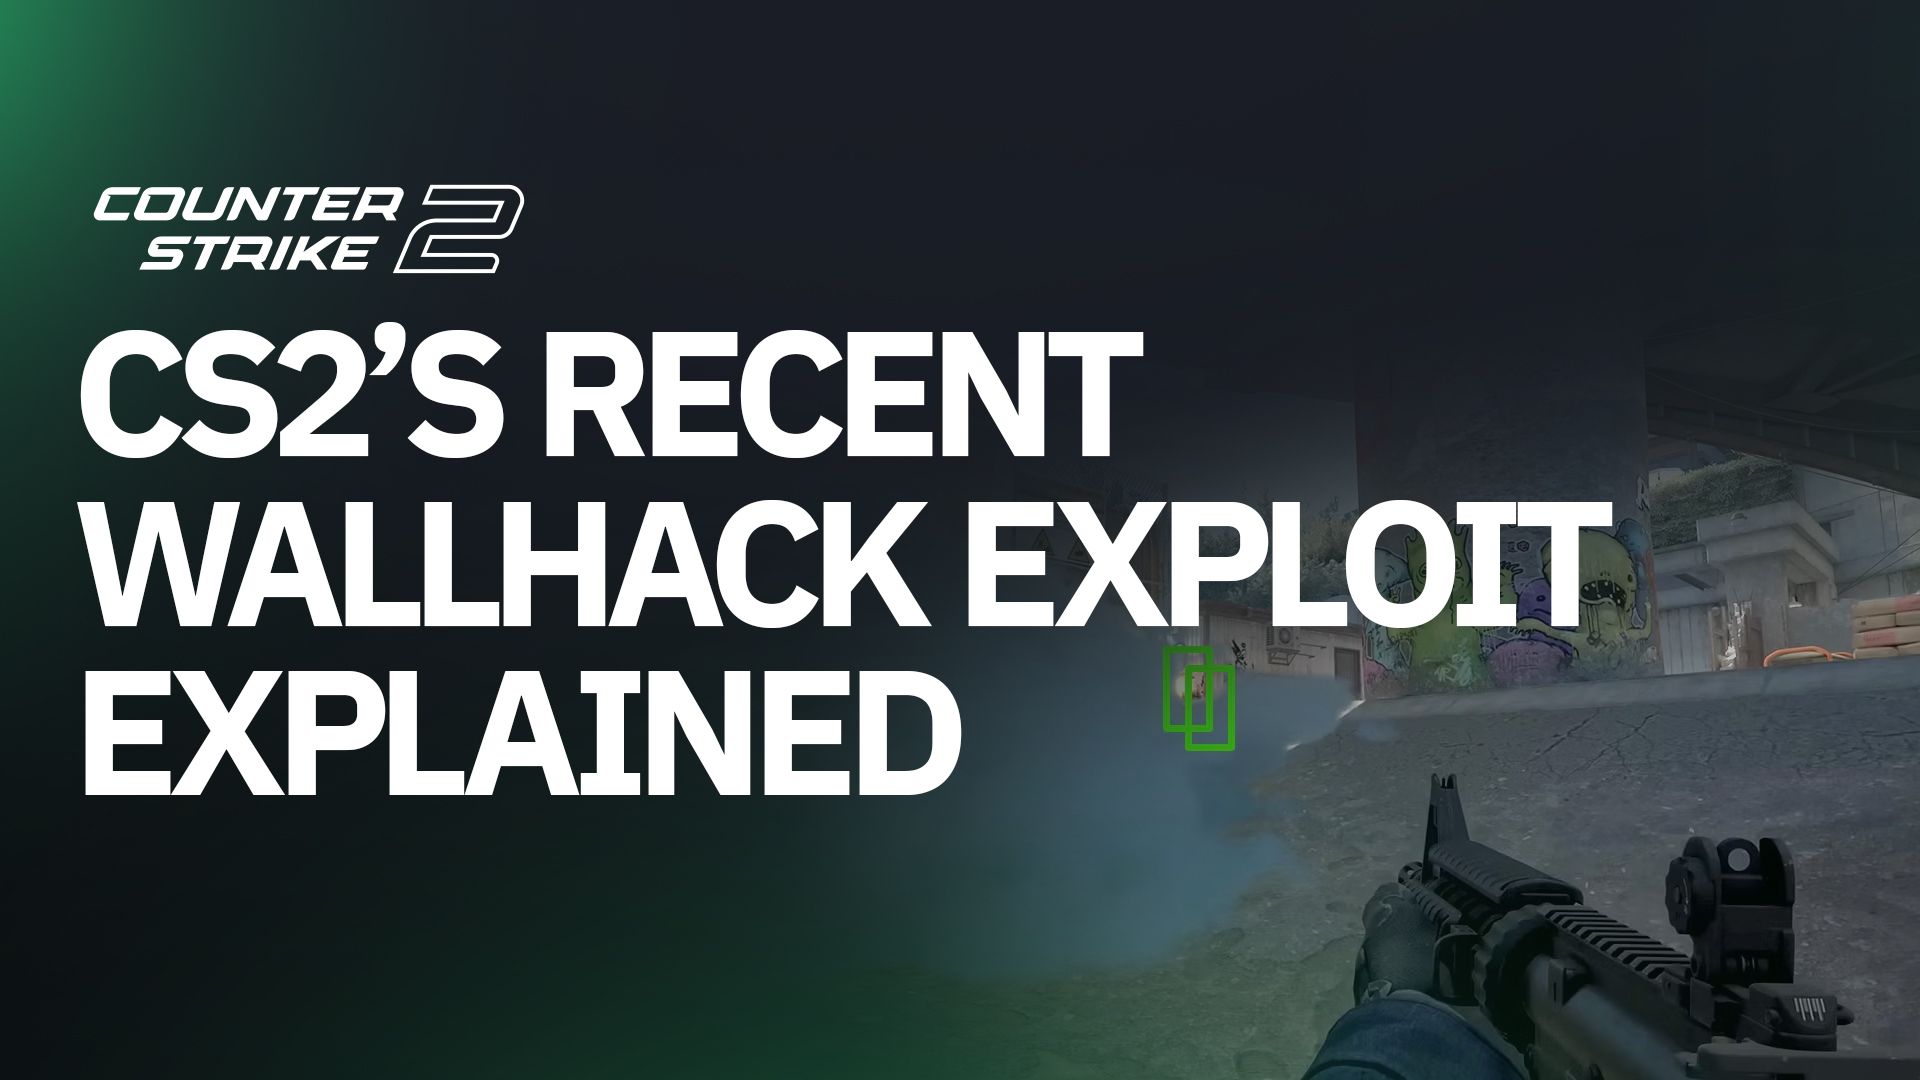 CS2's Recent Wallhack Exploit Explained